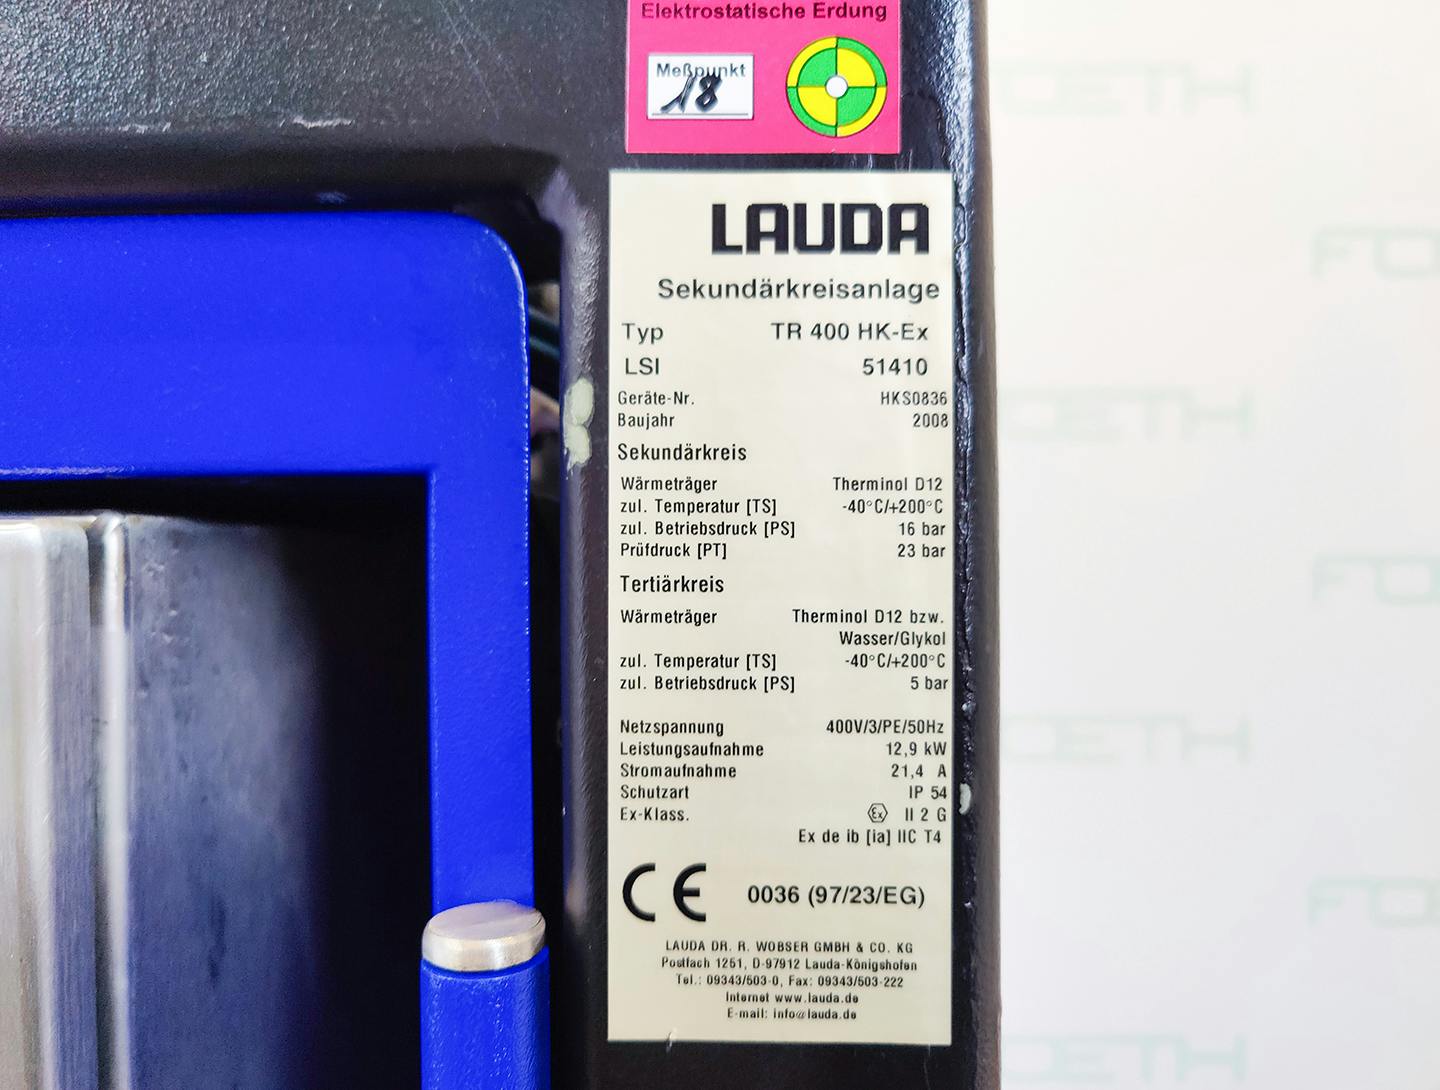 Lauda TR400 HK-EX "secondary circuit system" - Temperature control unit - image 7